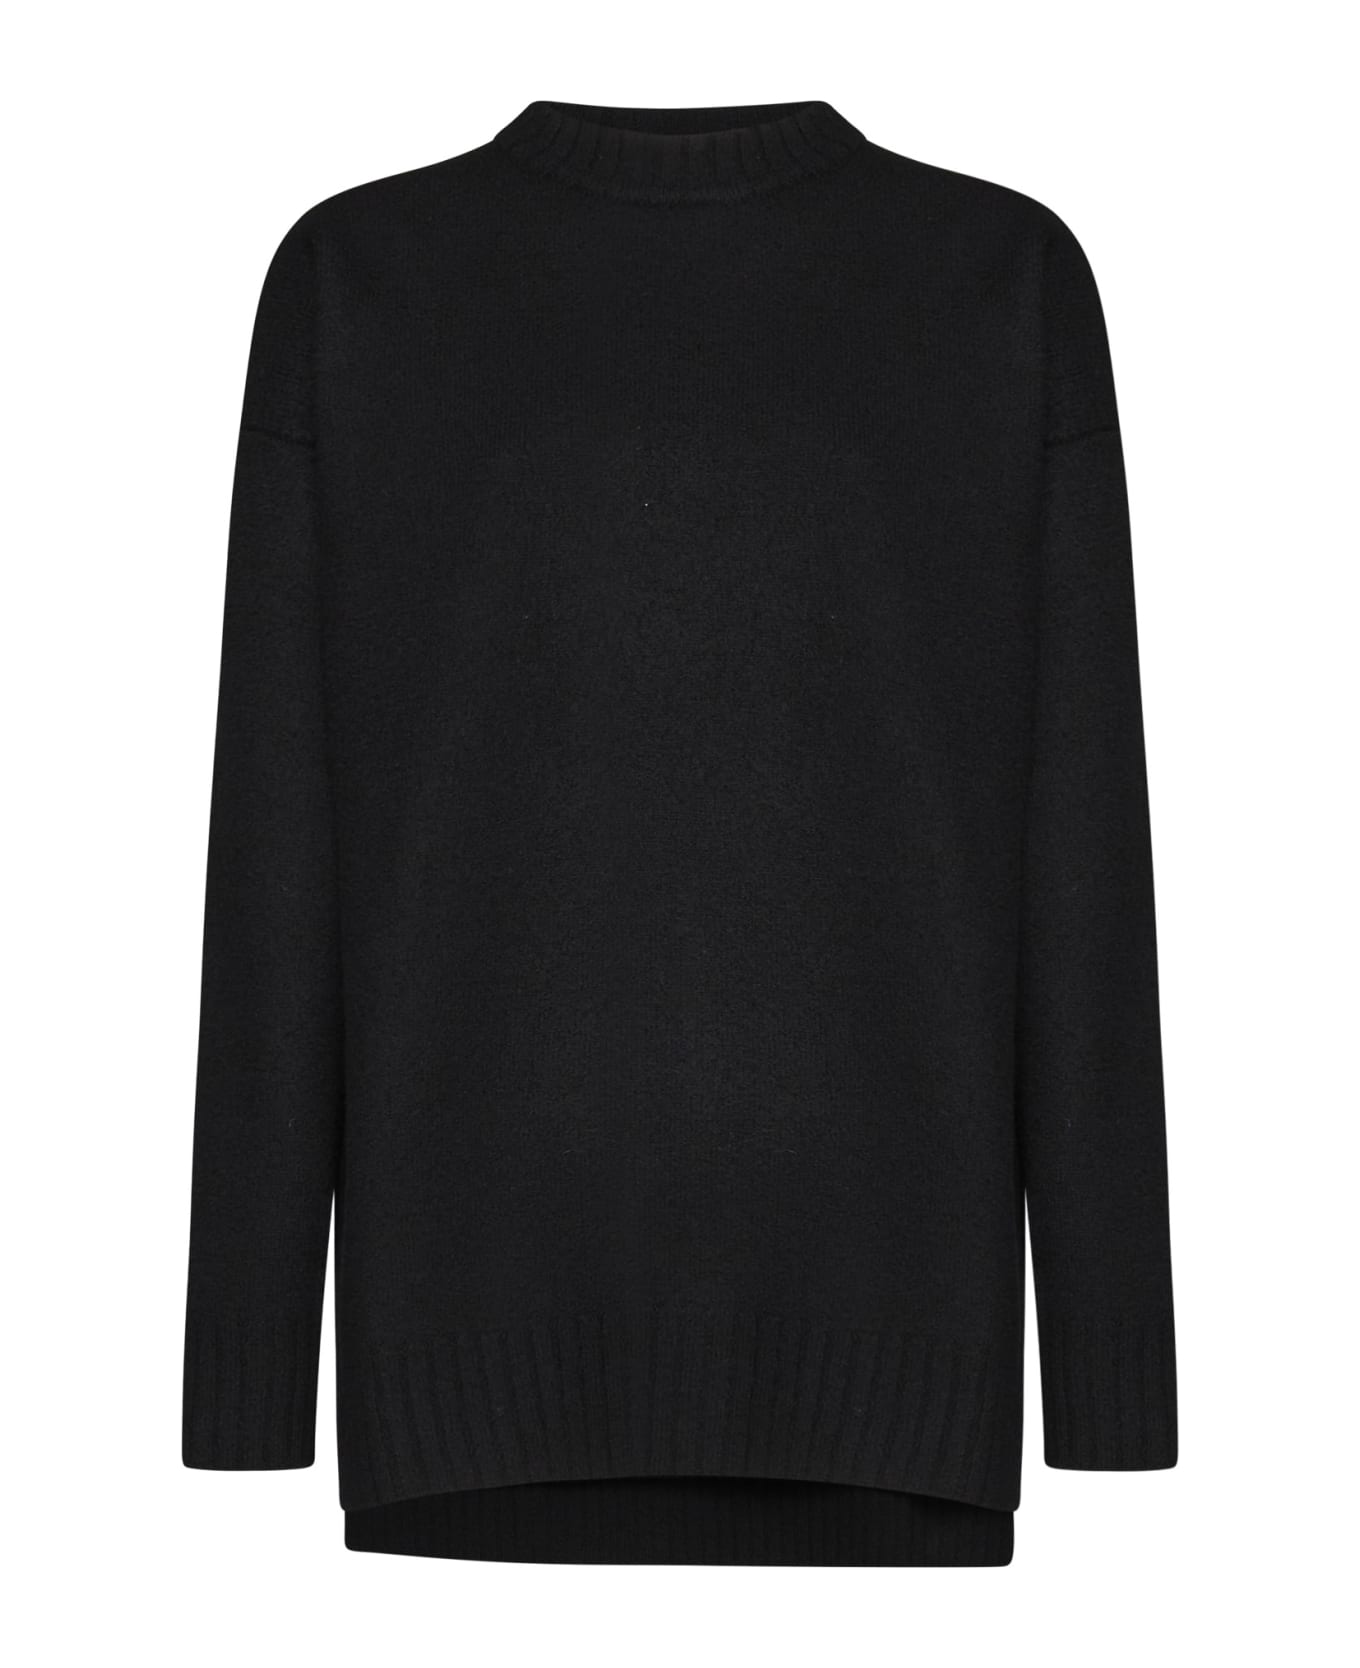 Jil Sander Sweater - Black ニットウェア